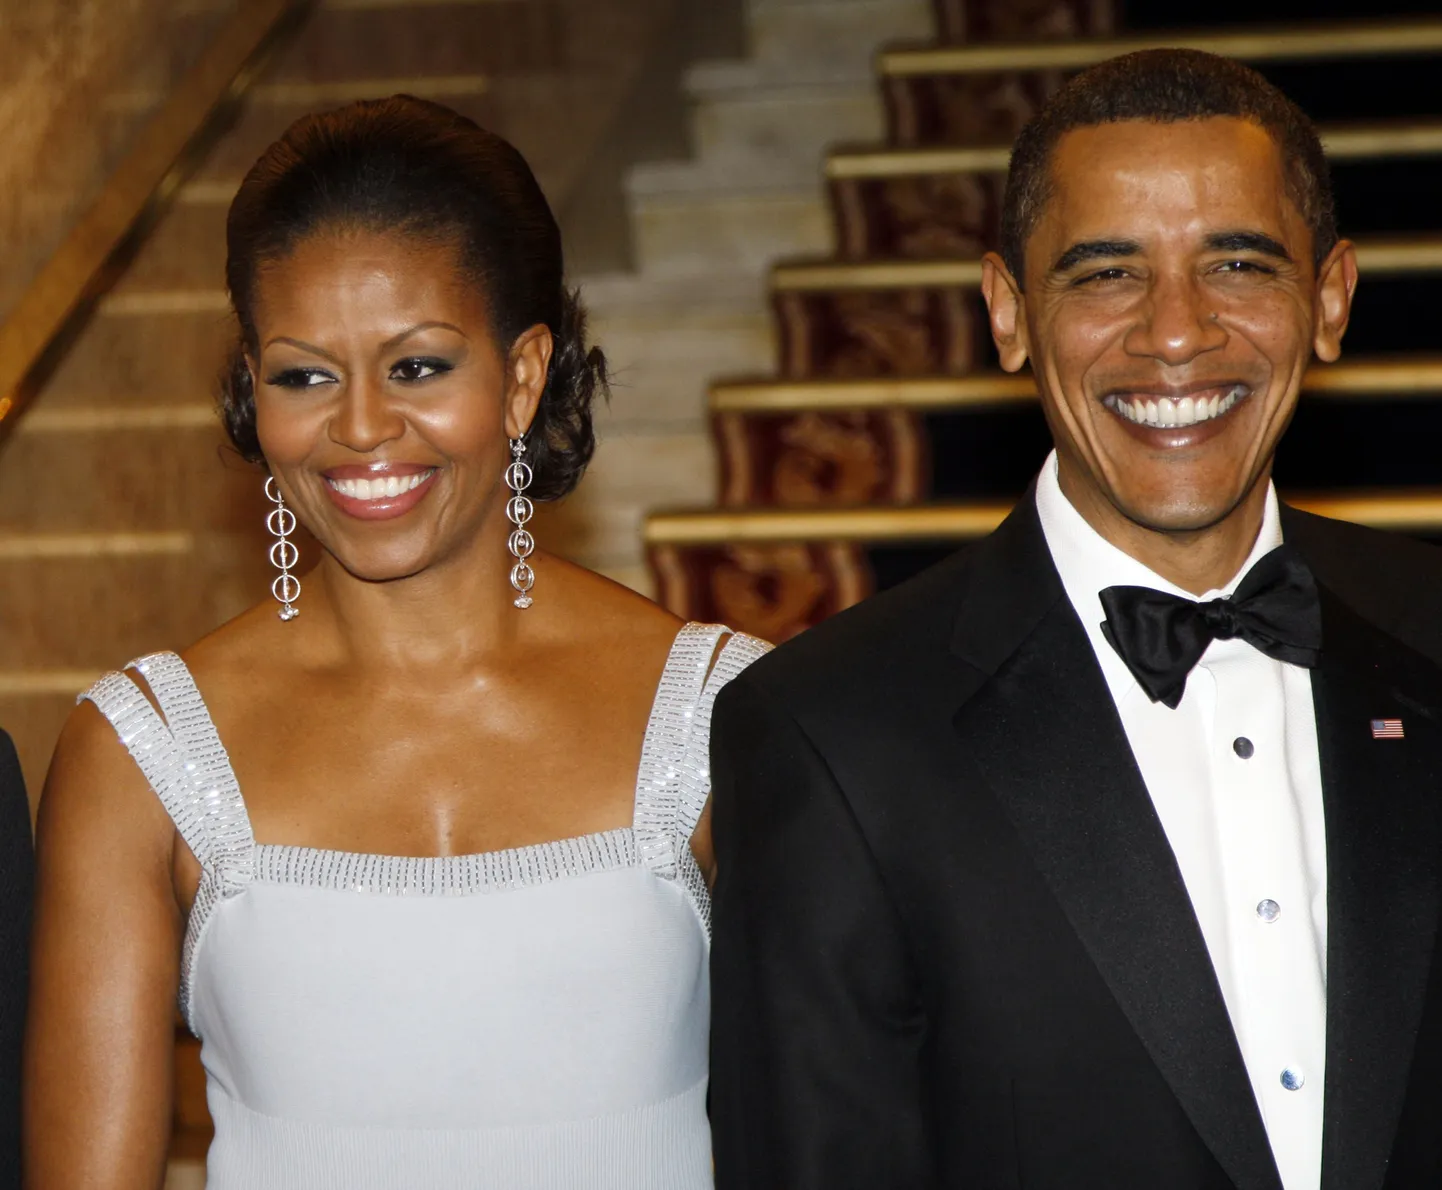 Ameerika president Barack Obama koos abikaasa Michelle Obamaga